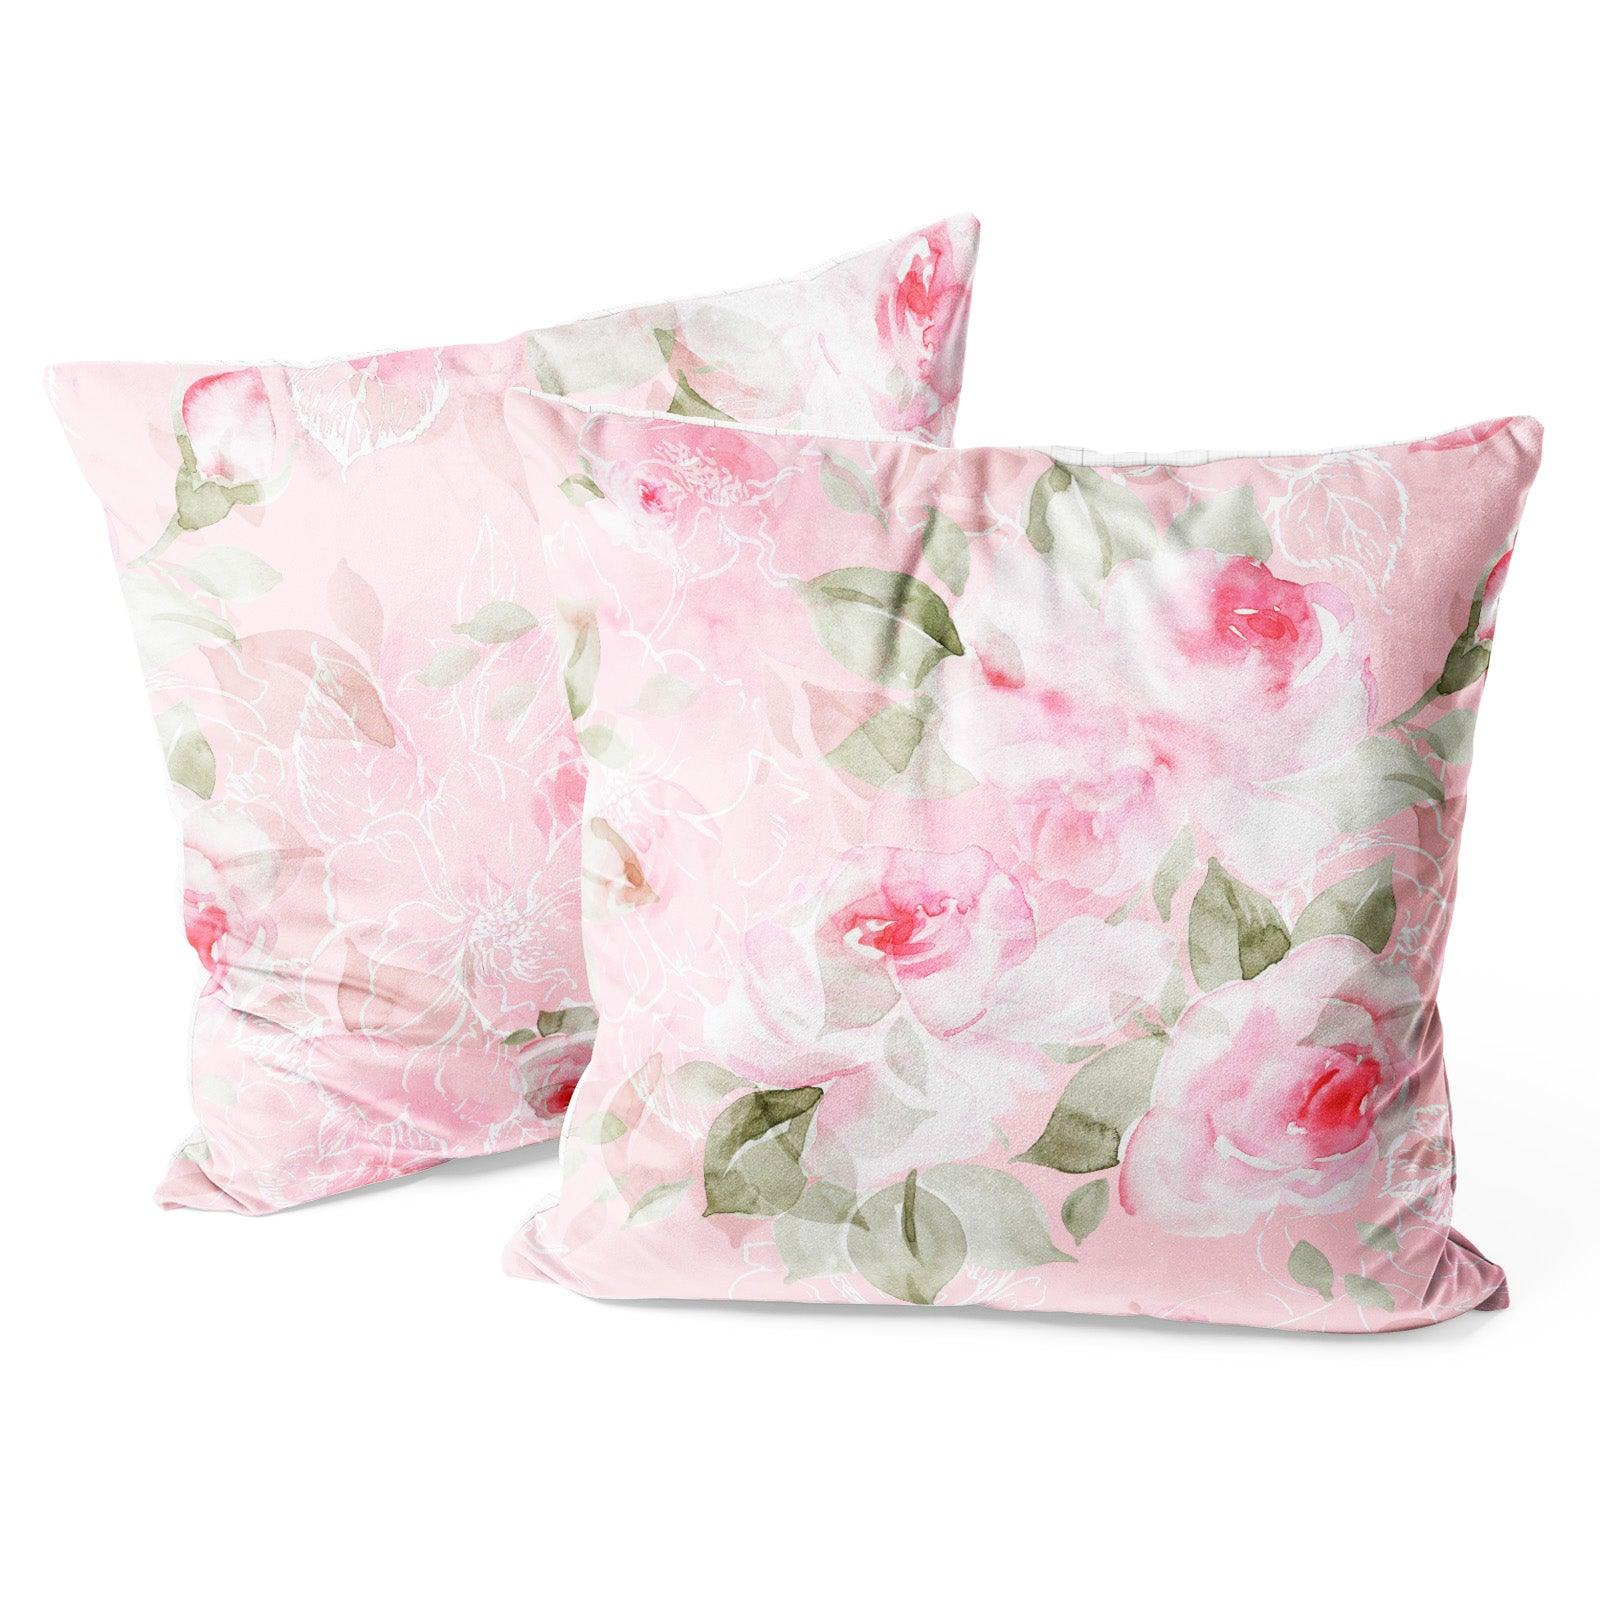 http://www.berkinarts.com/cdn/shop/files/modern-flower-throw-pillow-covers-pack-of-2-18x18-inch-cute-pink-roses-berkin-arts-1.jpg?v=1688965235